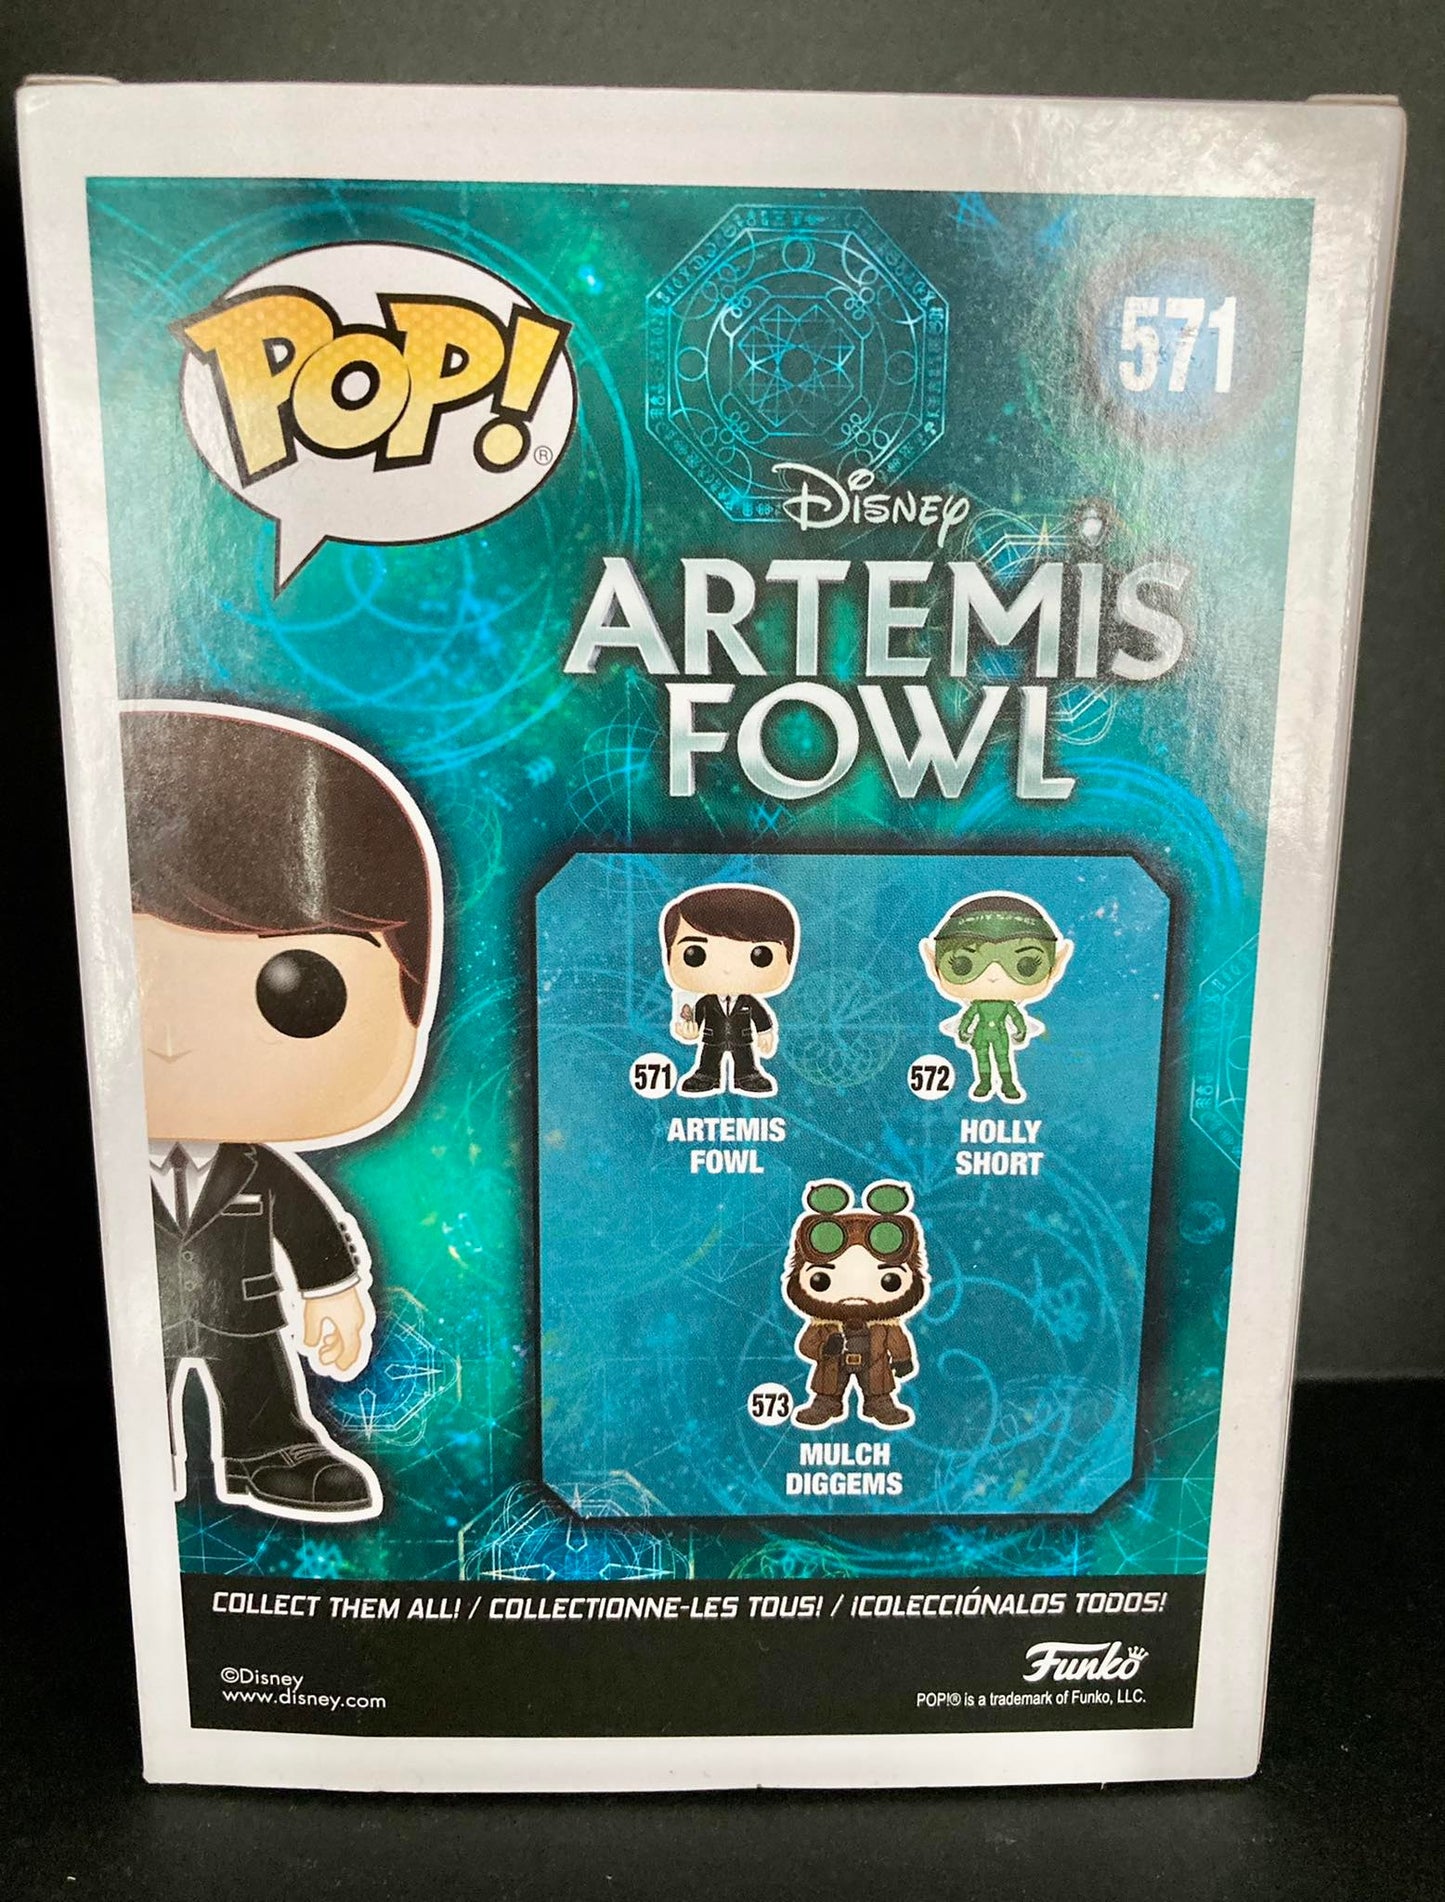 Figurine Pop Artemis Fowl [Disney] #571 Artemis Fowl